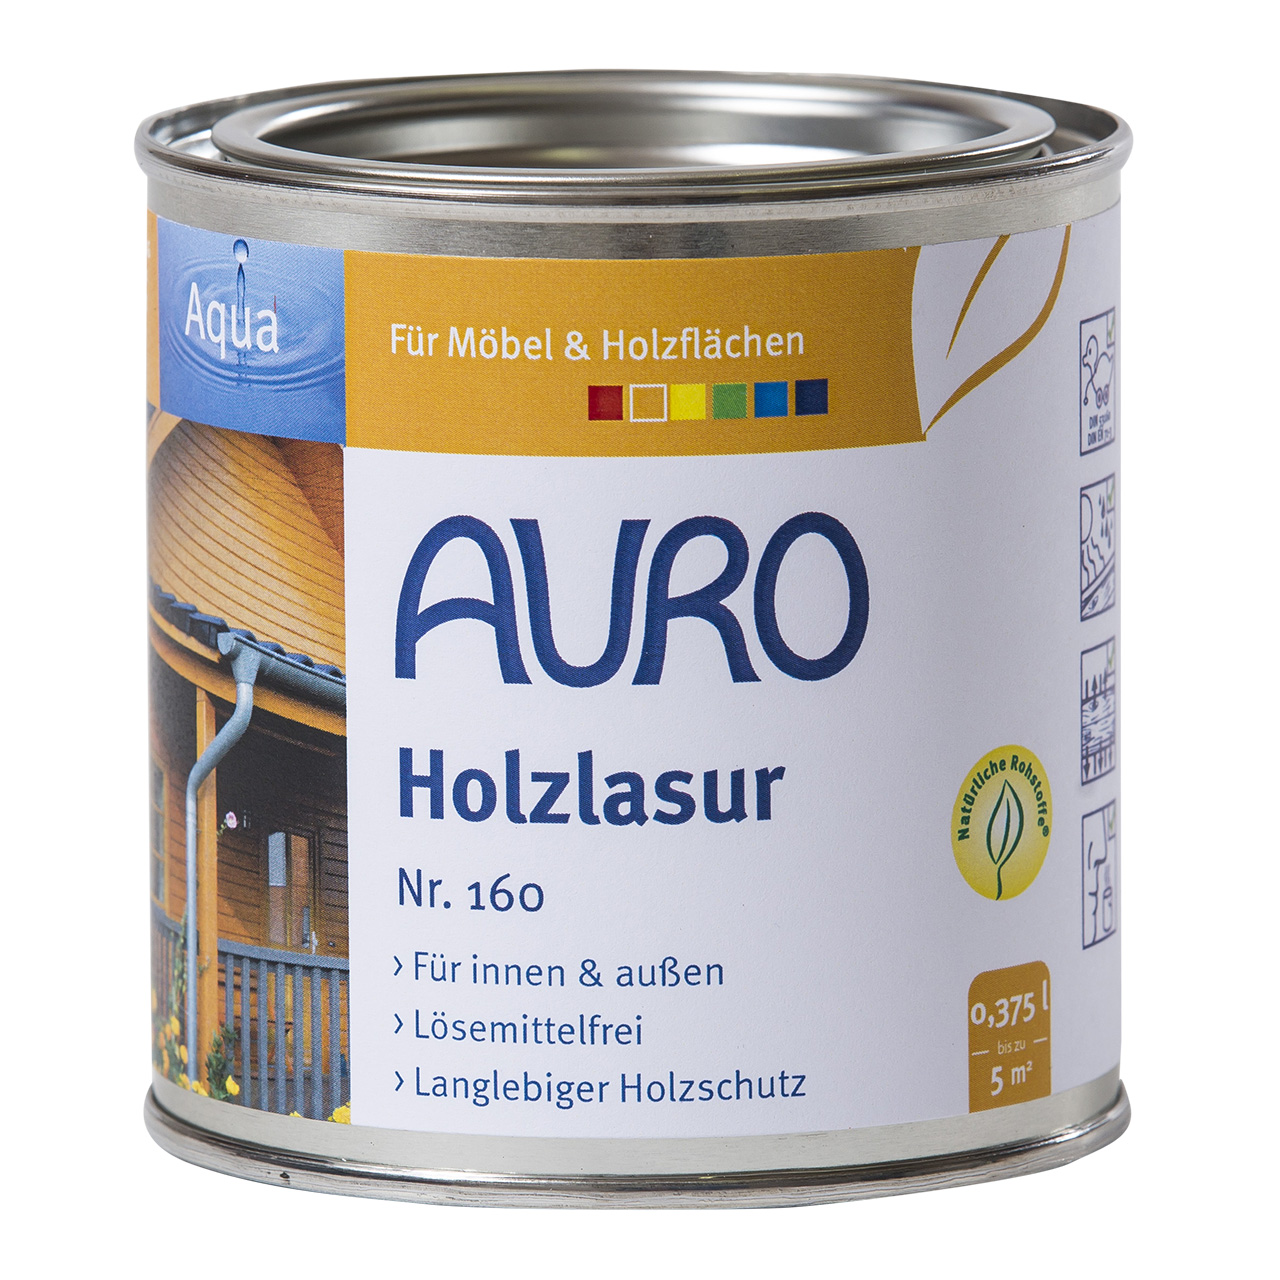 Auro Holzlasur Nr. 160 kiefer, 0,375ml